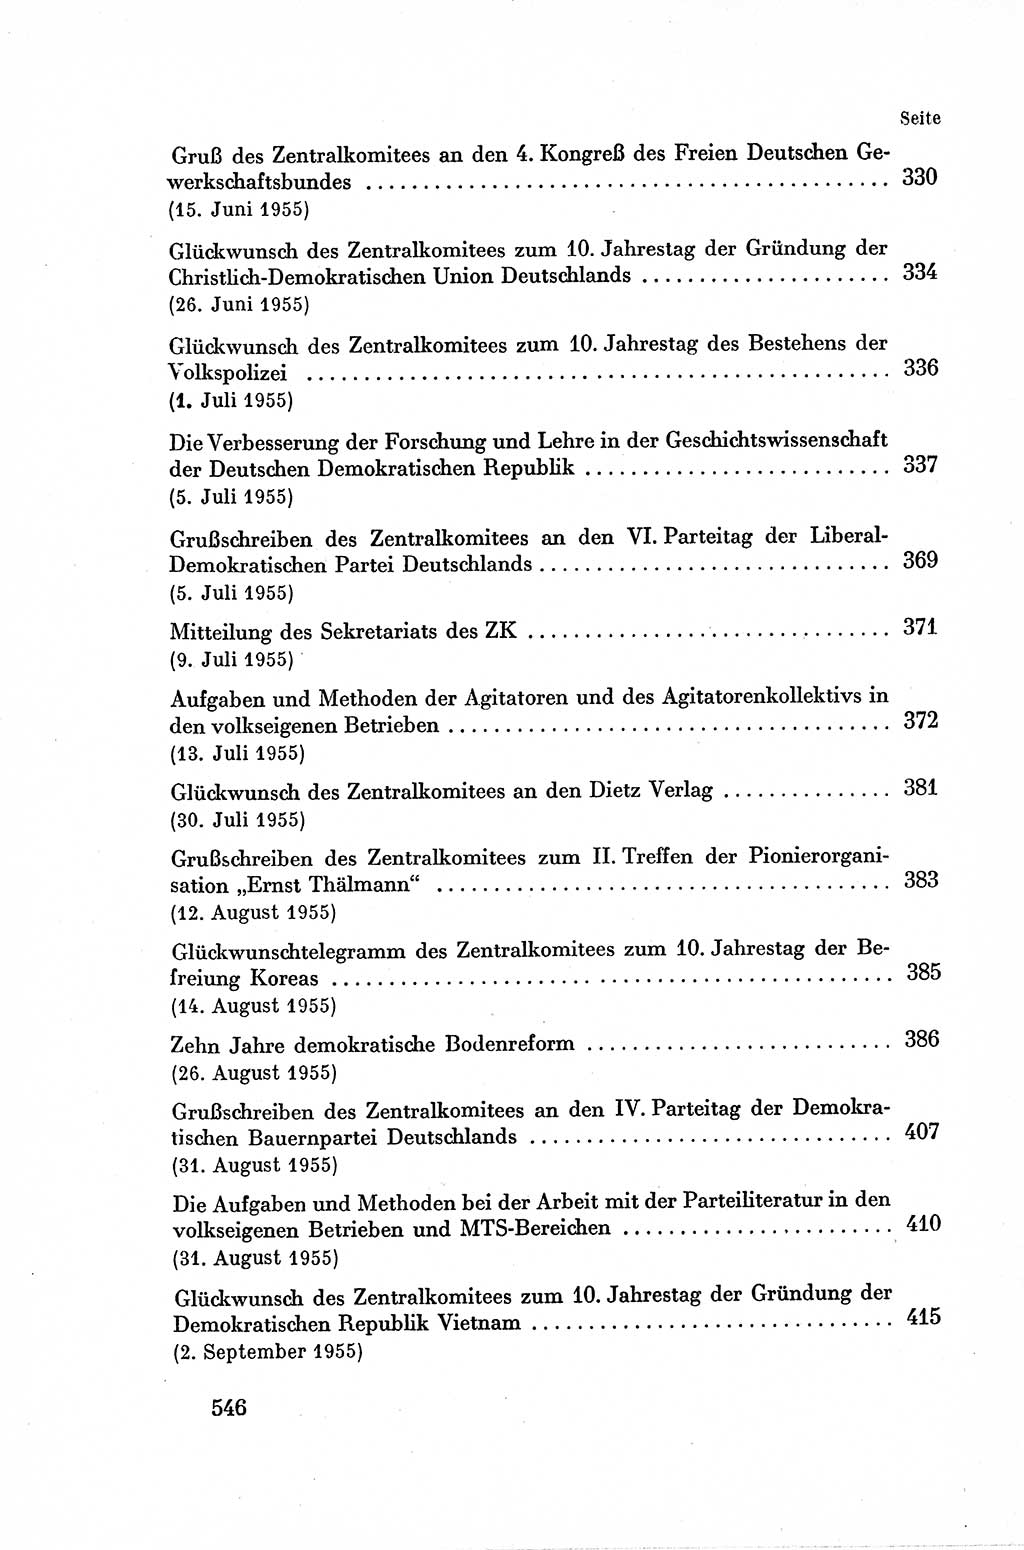 Dokumente der Sozialistischen Einheitspartei Deutschlands (SED) [Deutsche Demokratische Republik (DDR)] 1954-1955, Seite 546 (Dok. SED DDR 1954-1955, S. 546)